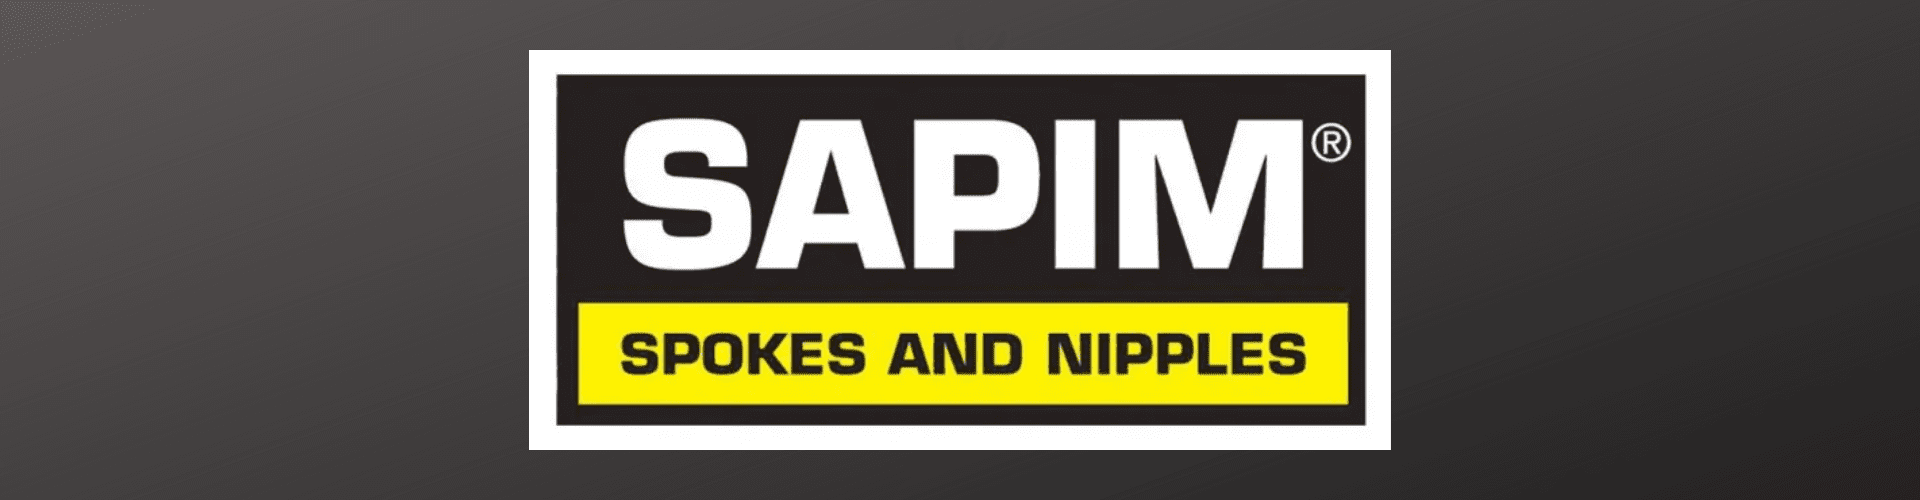 Sapim Brand-Category